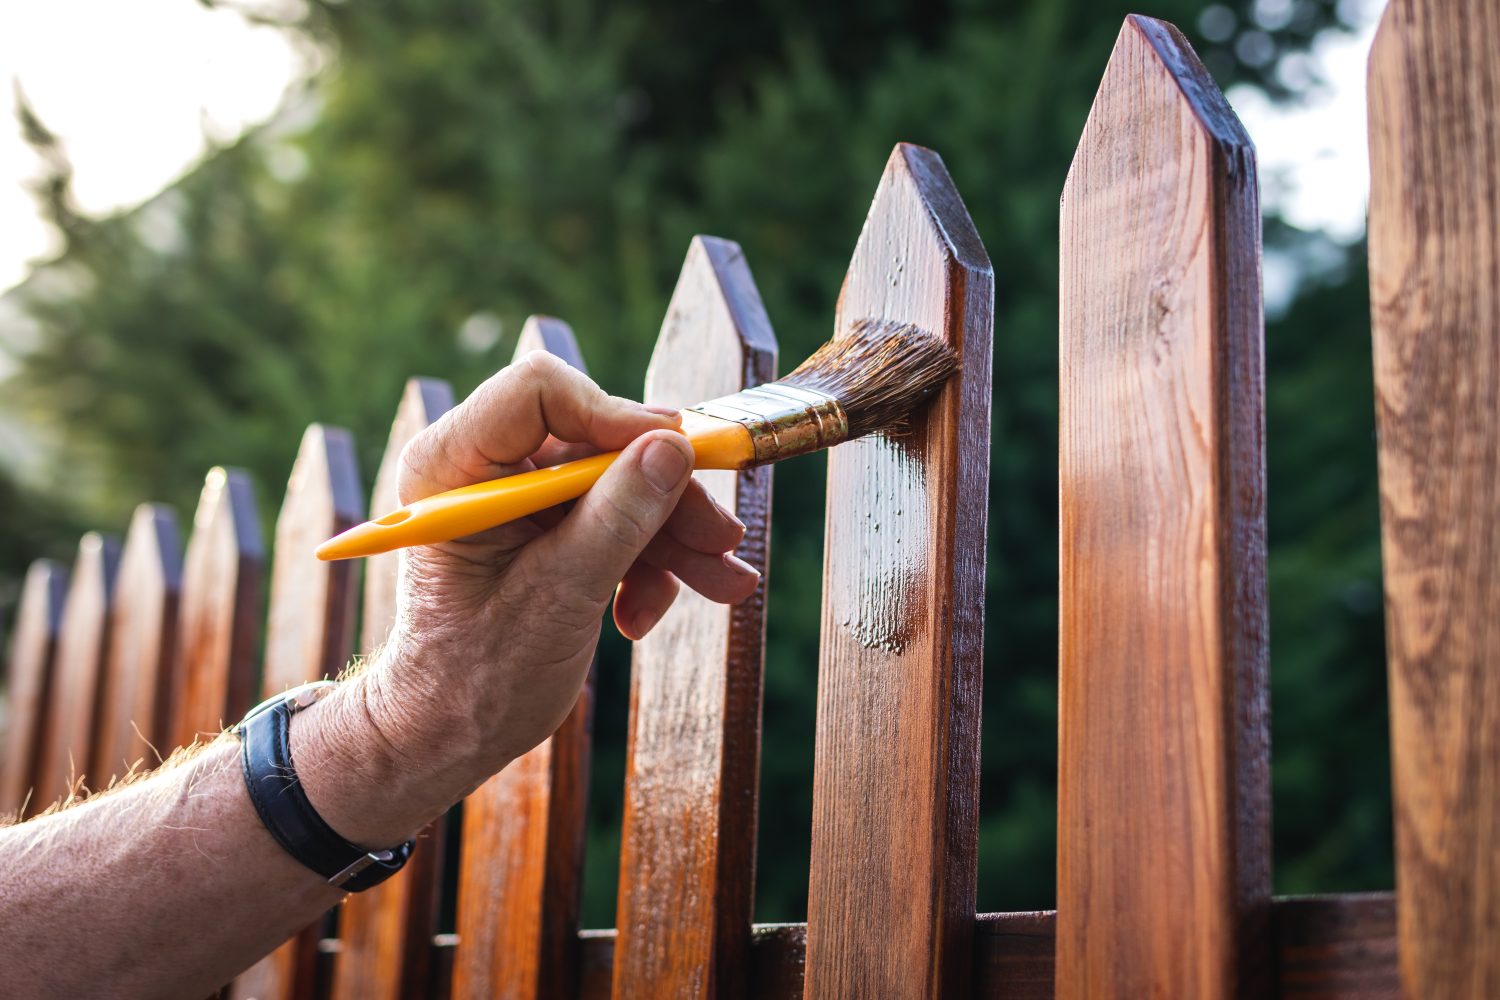 Ploty ze dřeva je potřeba pravidelně natírat a opravovat, nejsou na věky. Výhodou je u nich to, že lze vše zvládnout svépomocí. Foto: Shutterstock